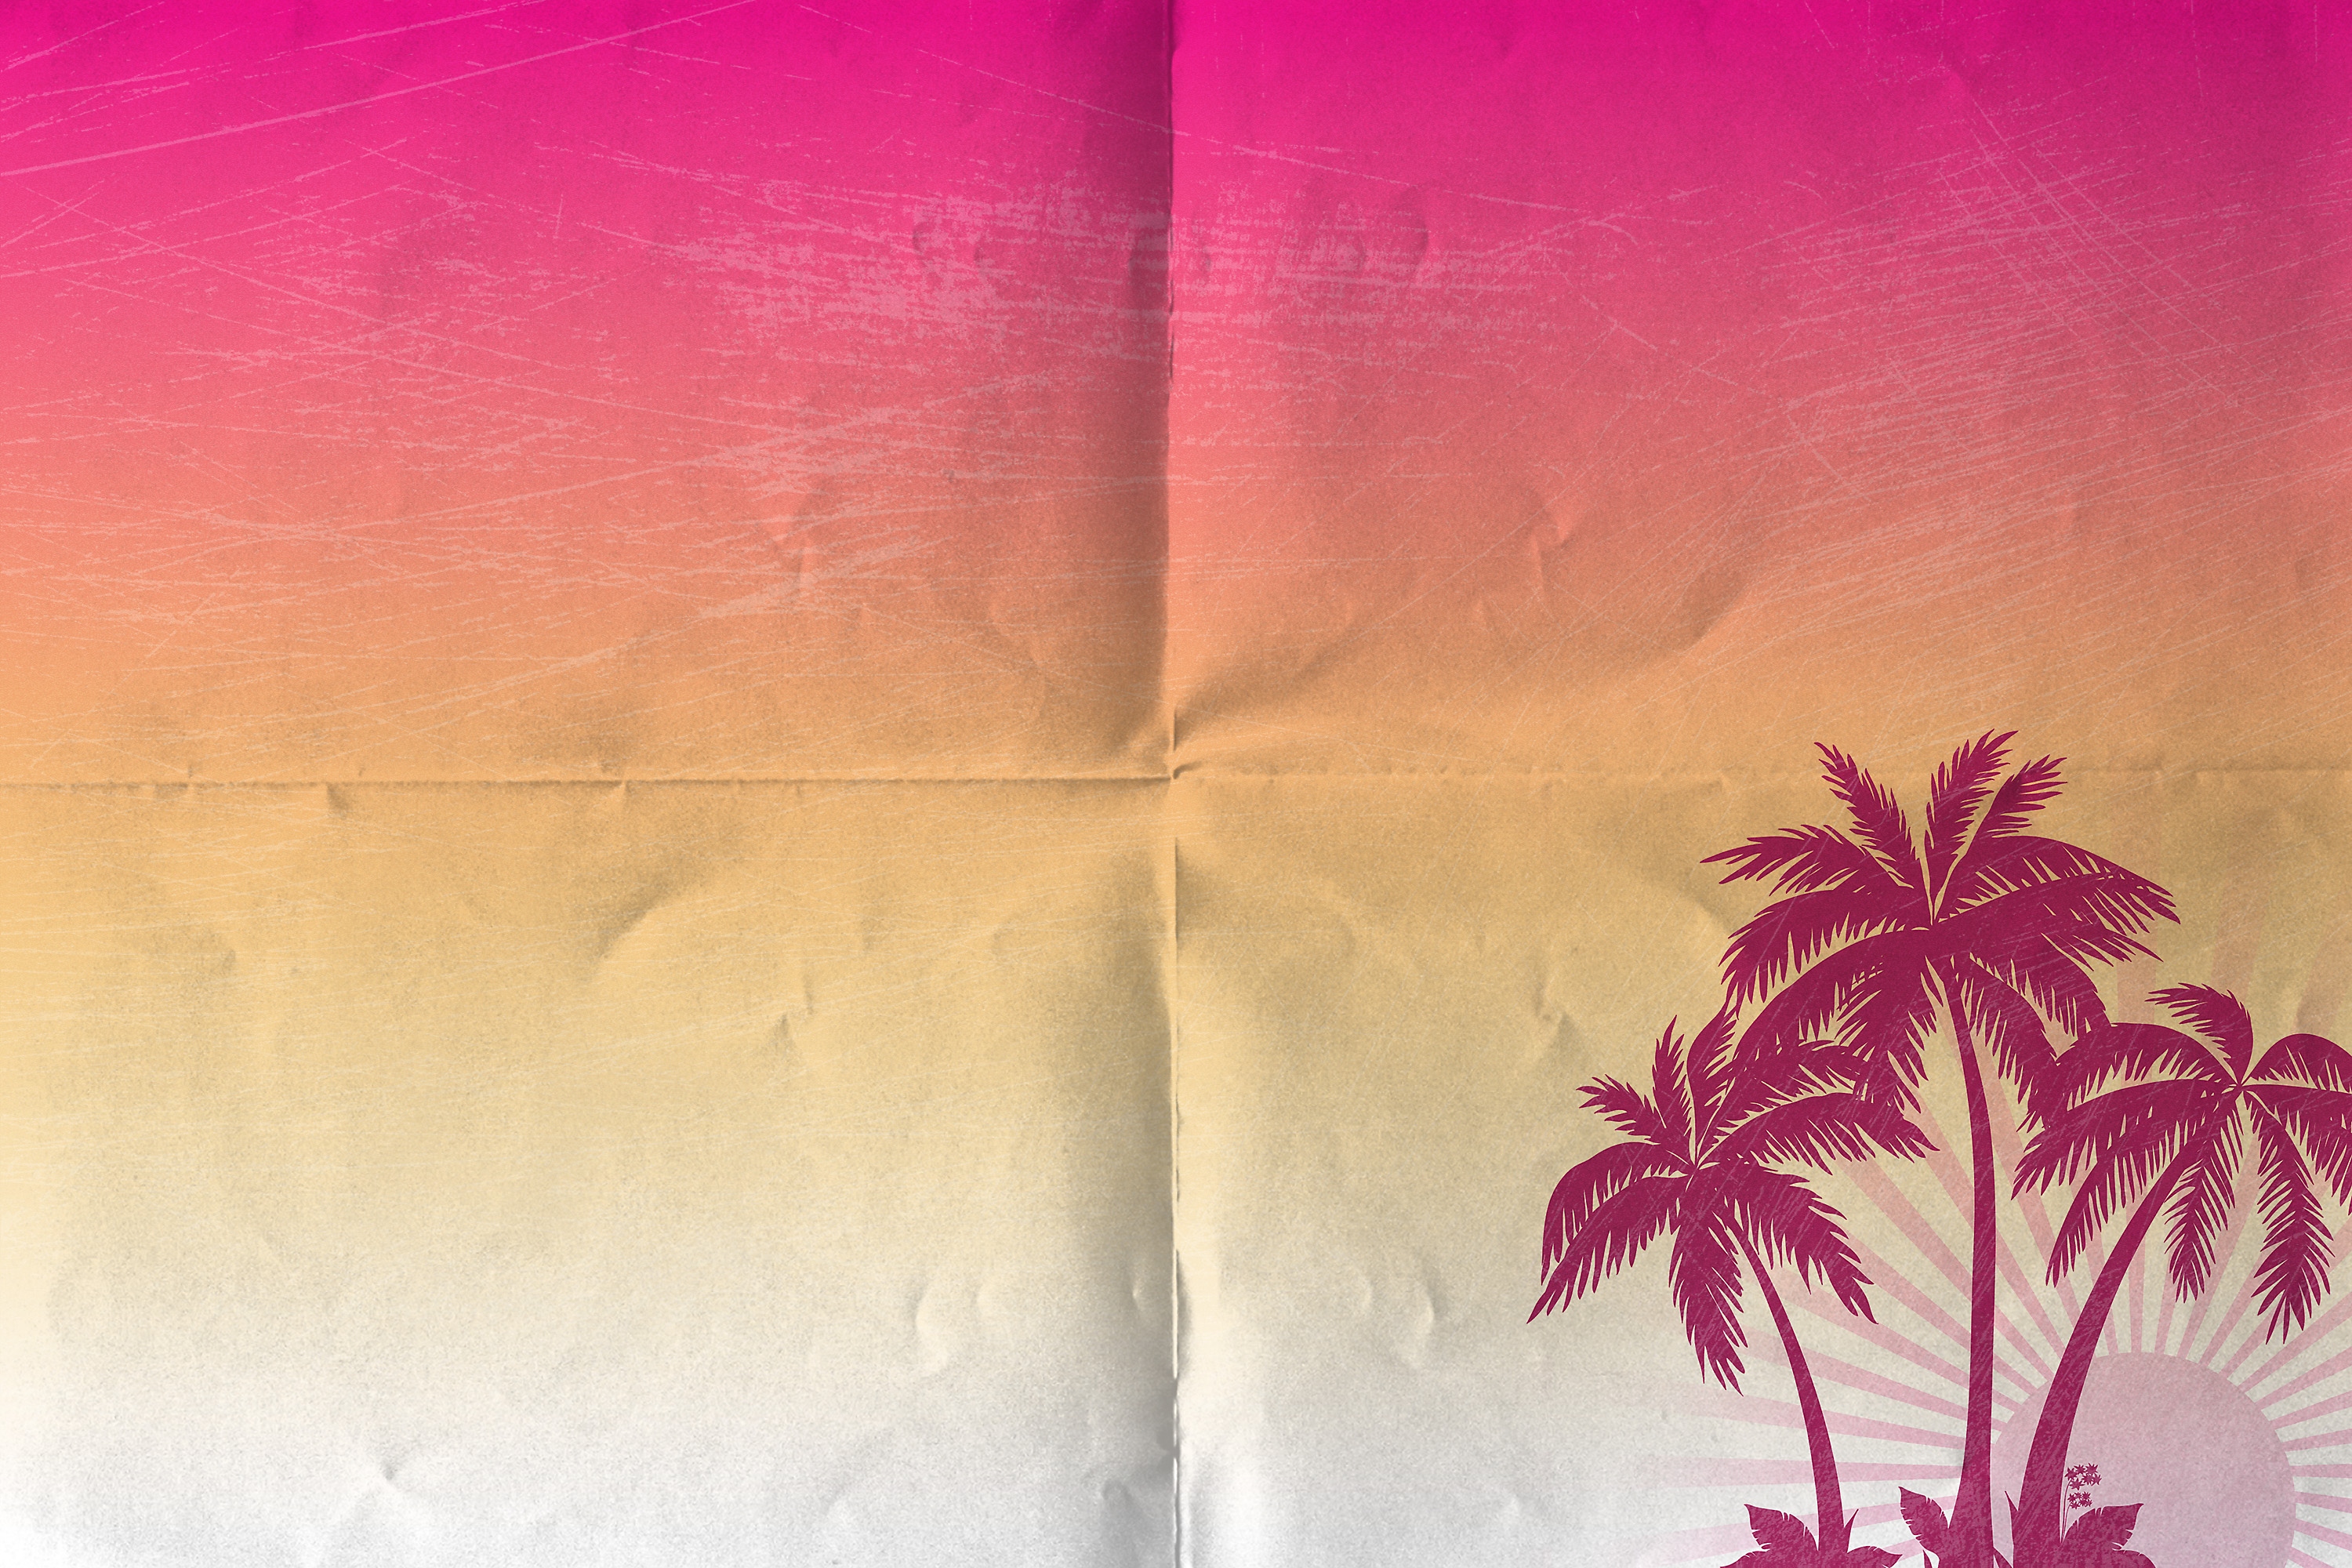 Patrón de fondo del folleto de Caldera: rosado